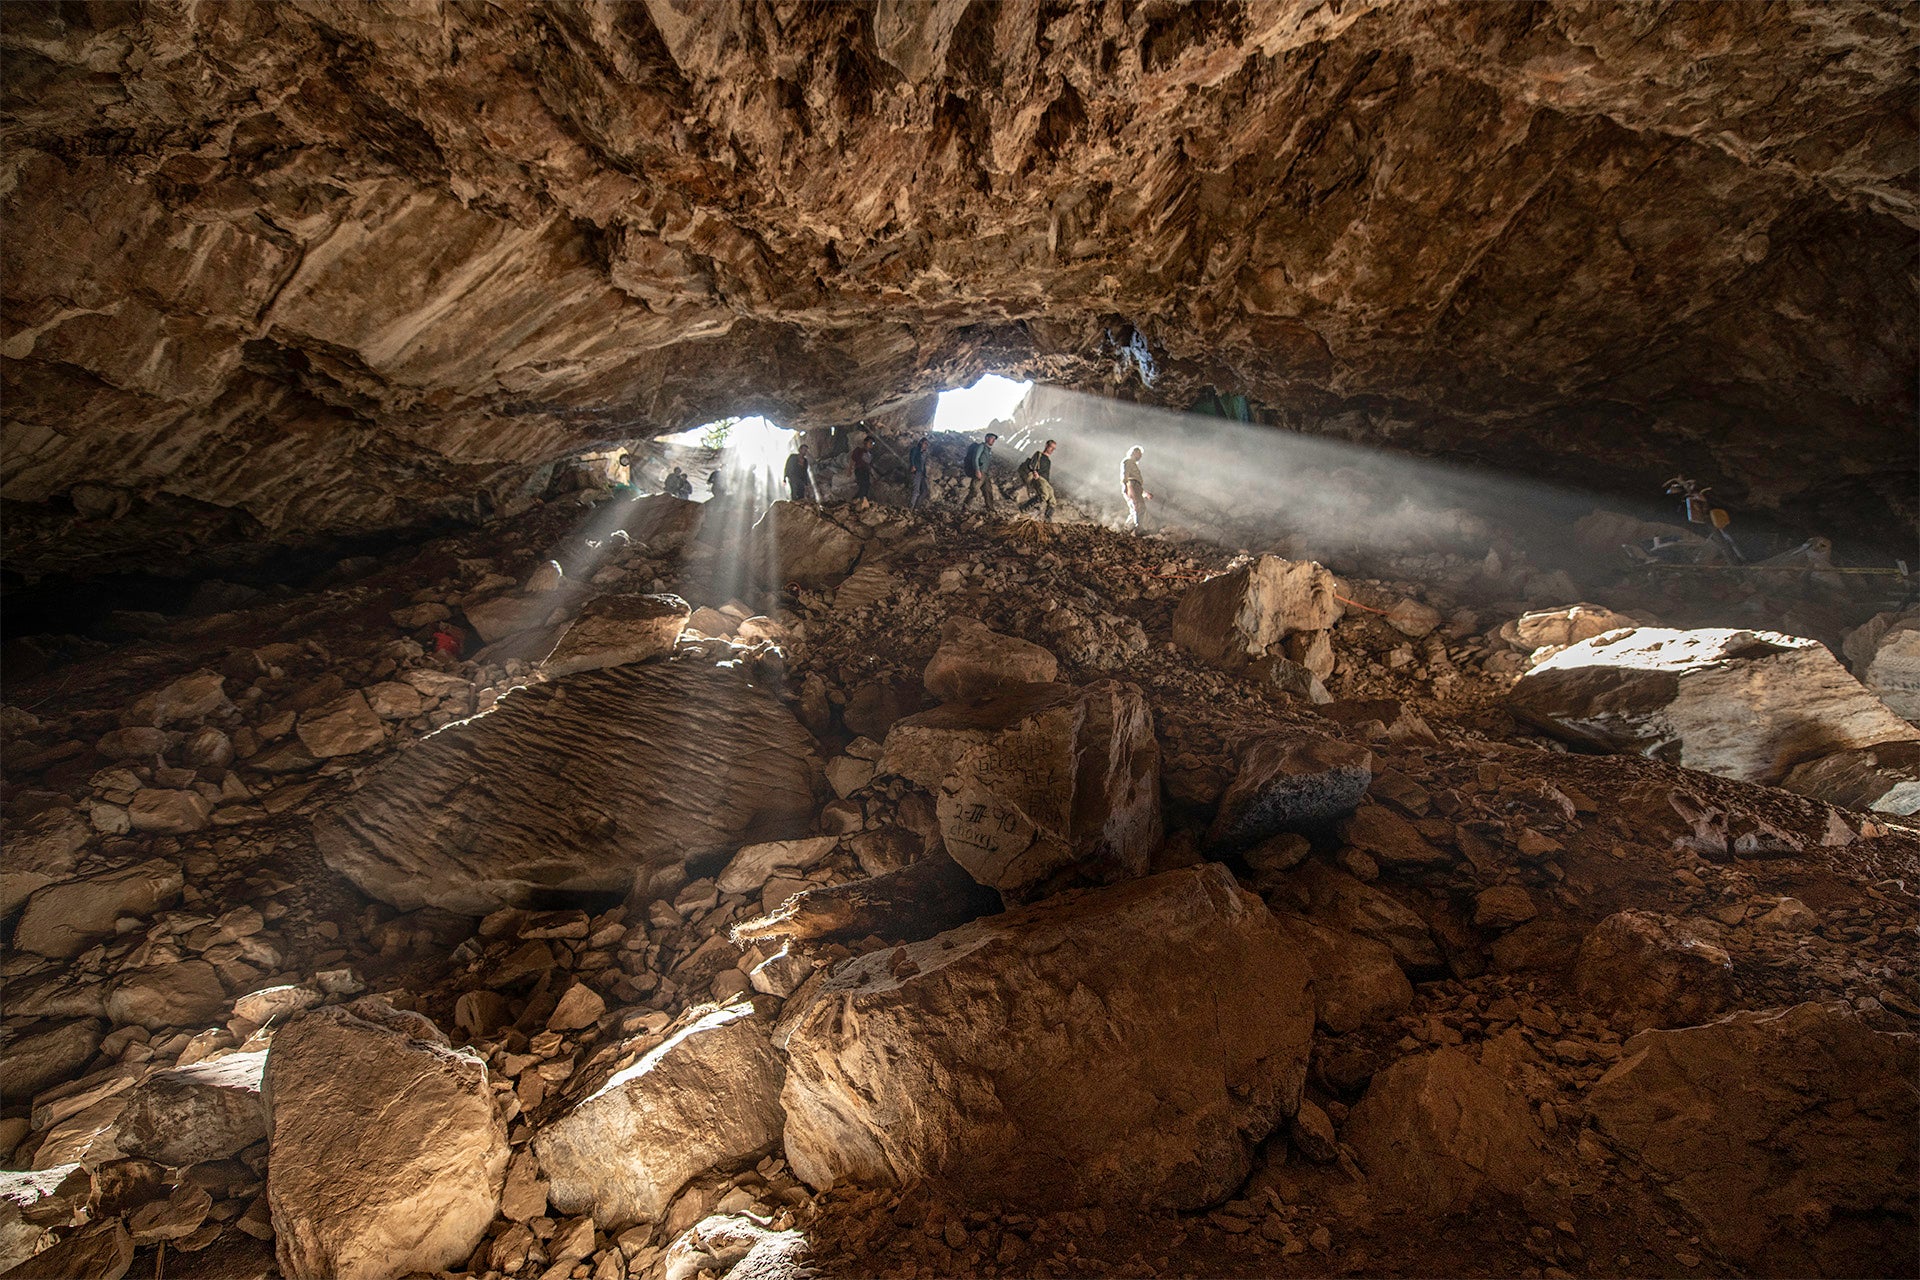 La cueva en la que se hizo este increíble descubrimiento se encuentra cerca de la ciudad de Zacatecas, Zacatecas